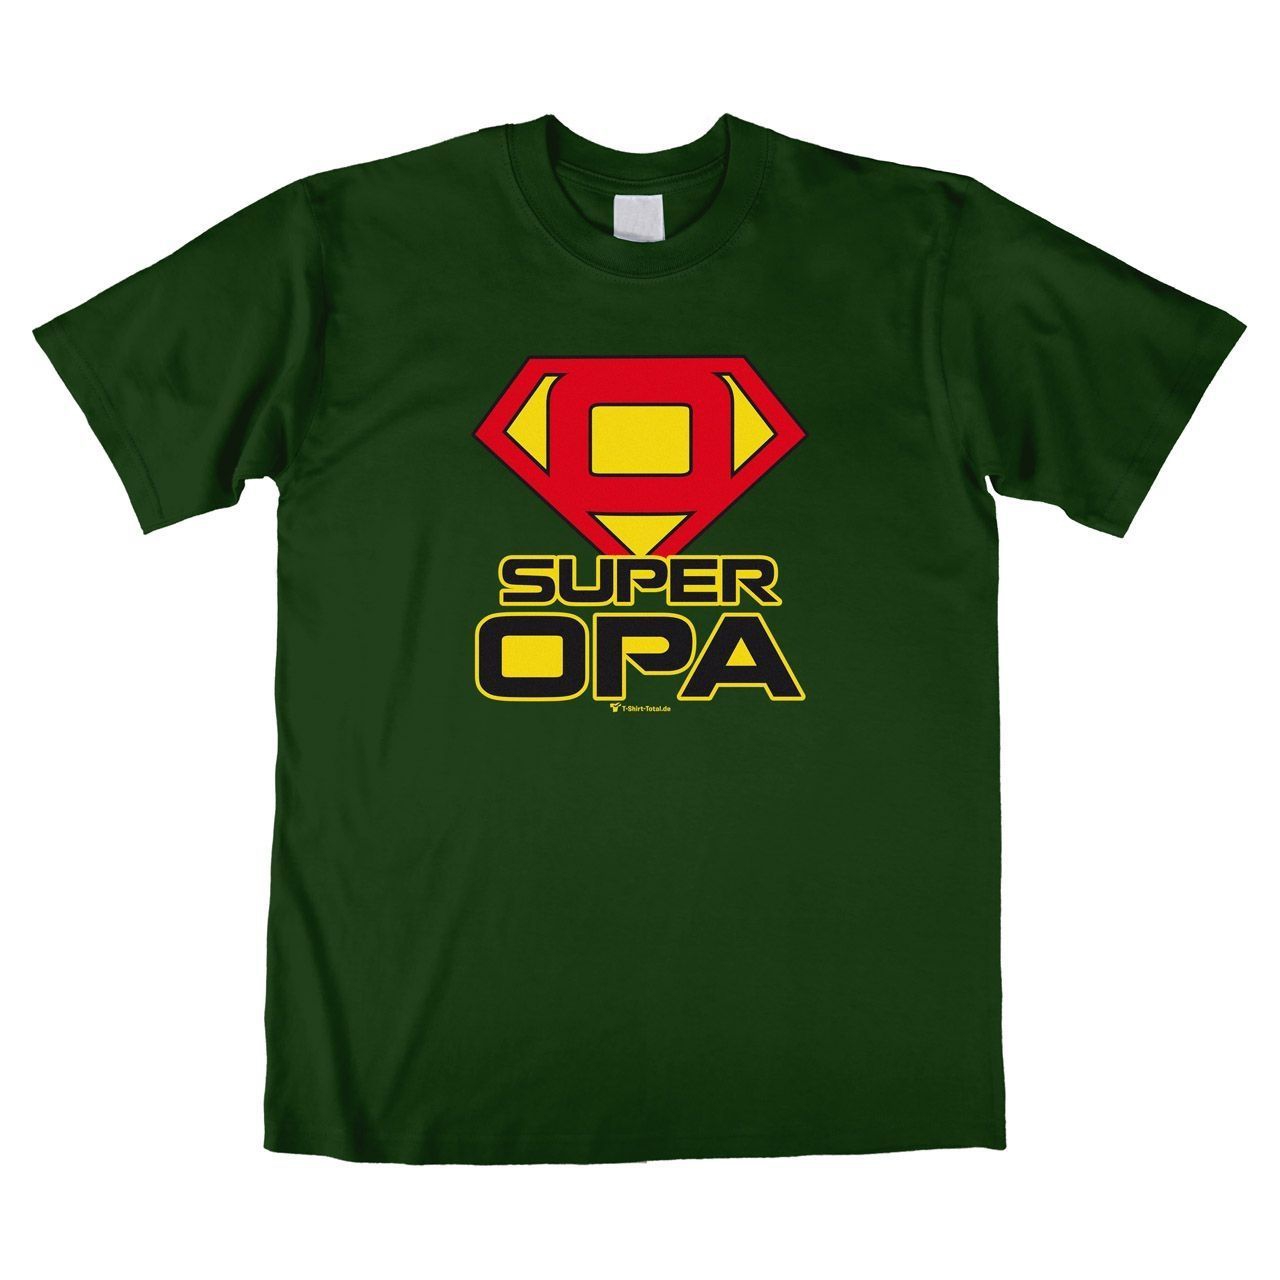 Super Opa Unisex T-Shirt dunkelgrün Large